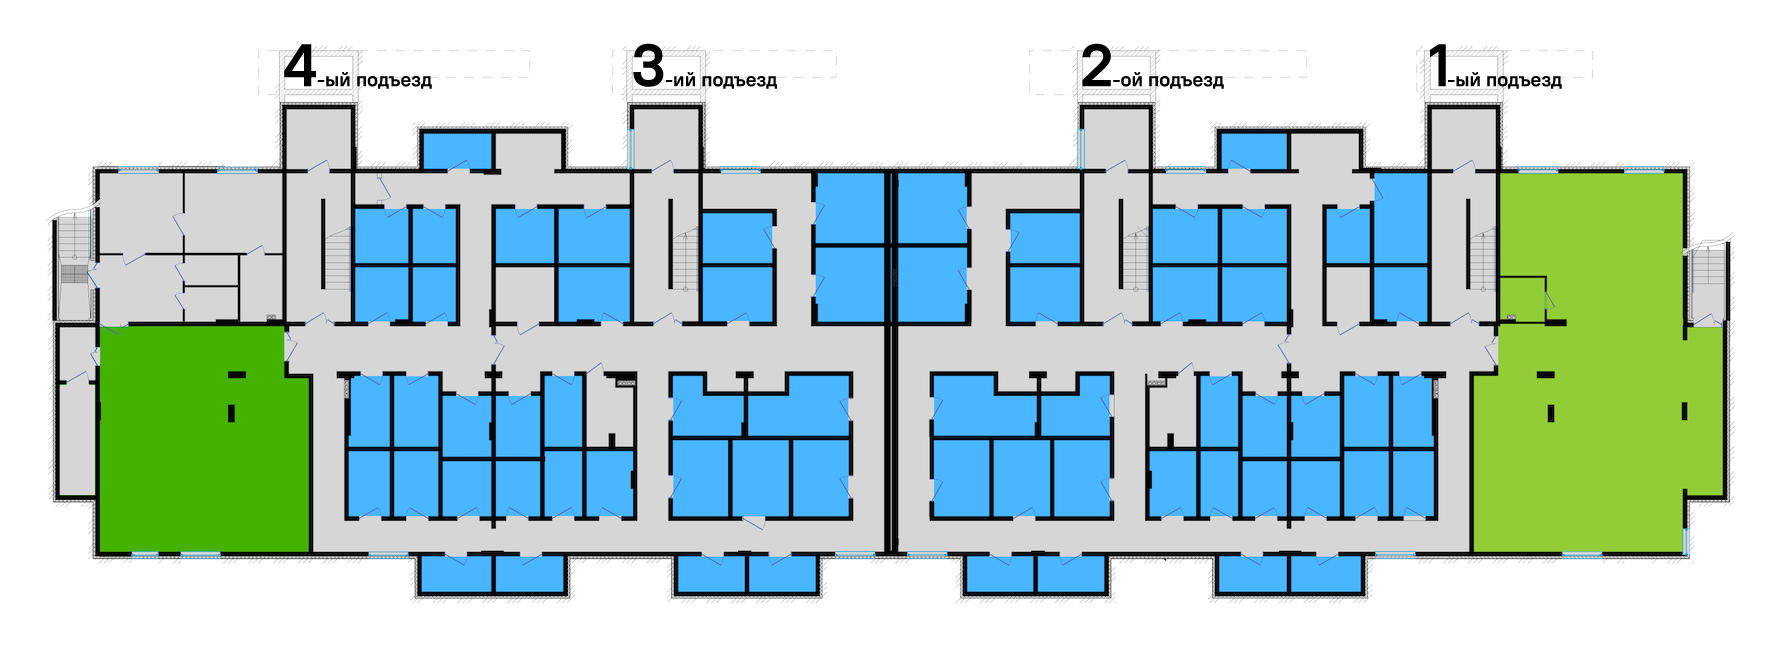 warehouses plan